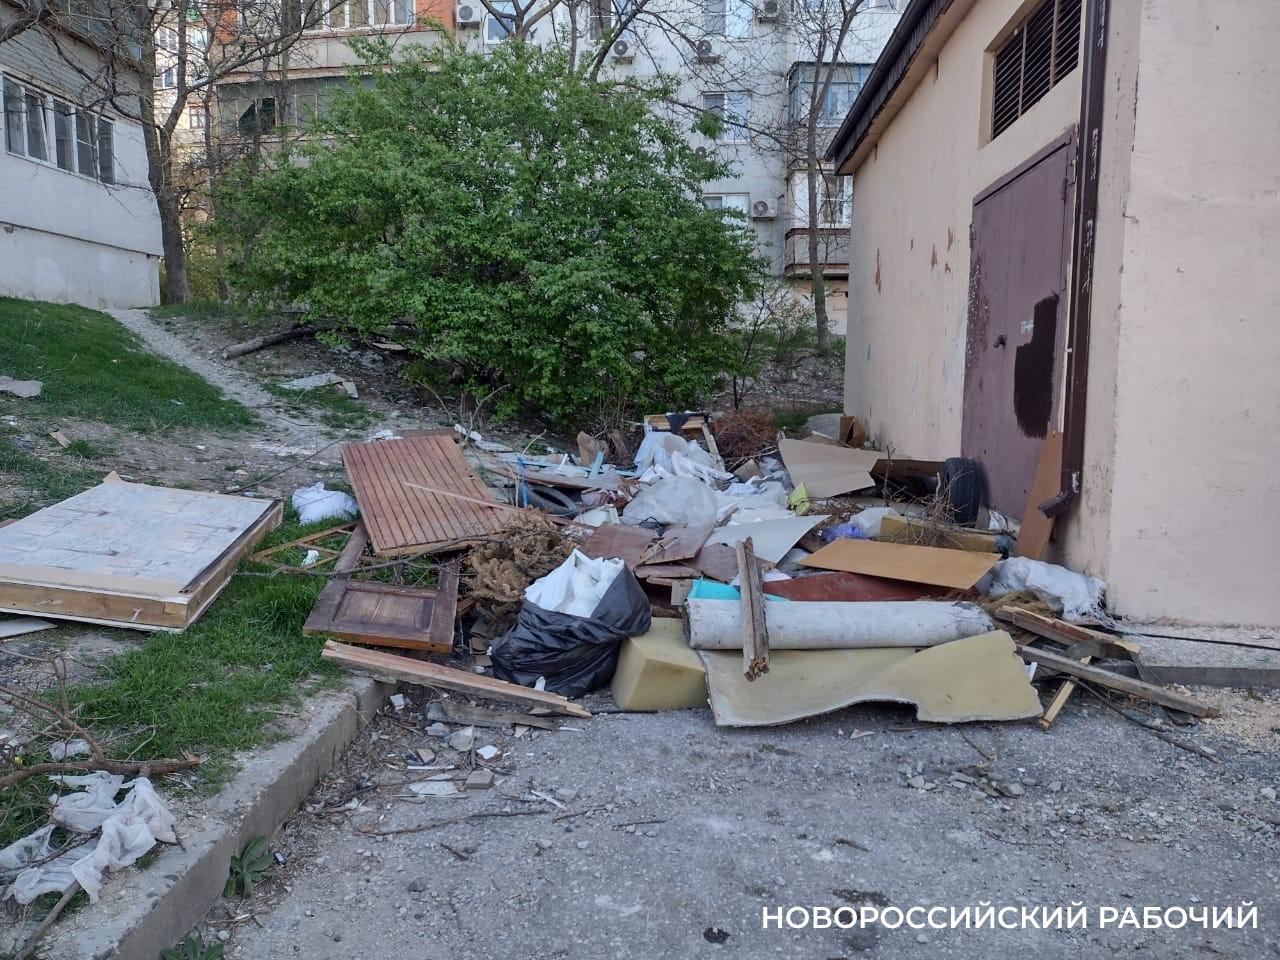 В Новороссийске жители по привычке бросают мусор туда, где когда-то был контейнер. Вот и новая свалка!